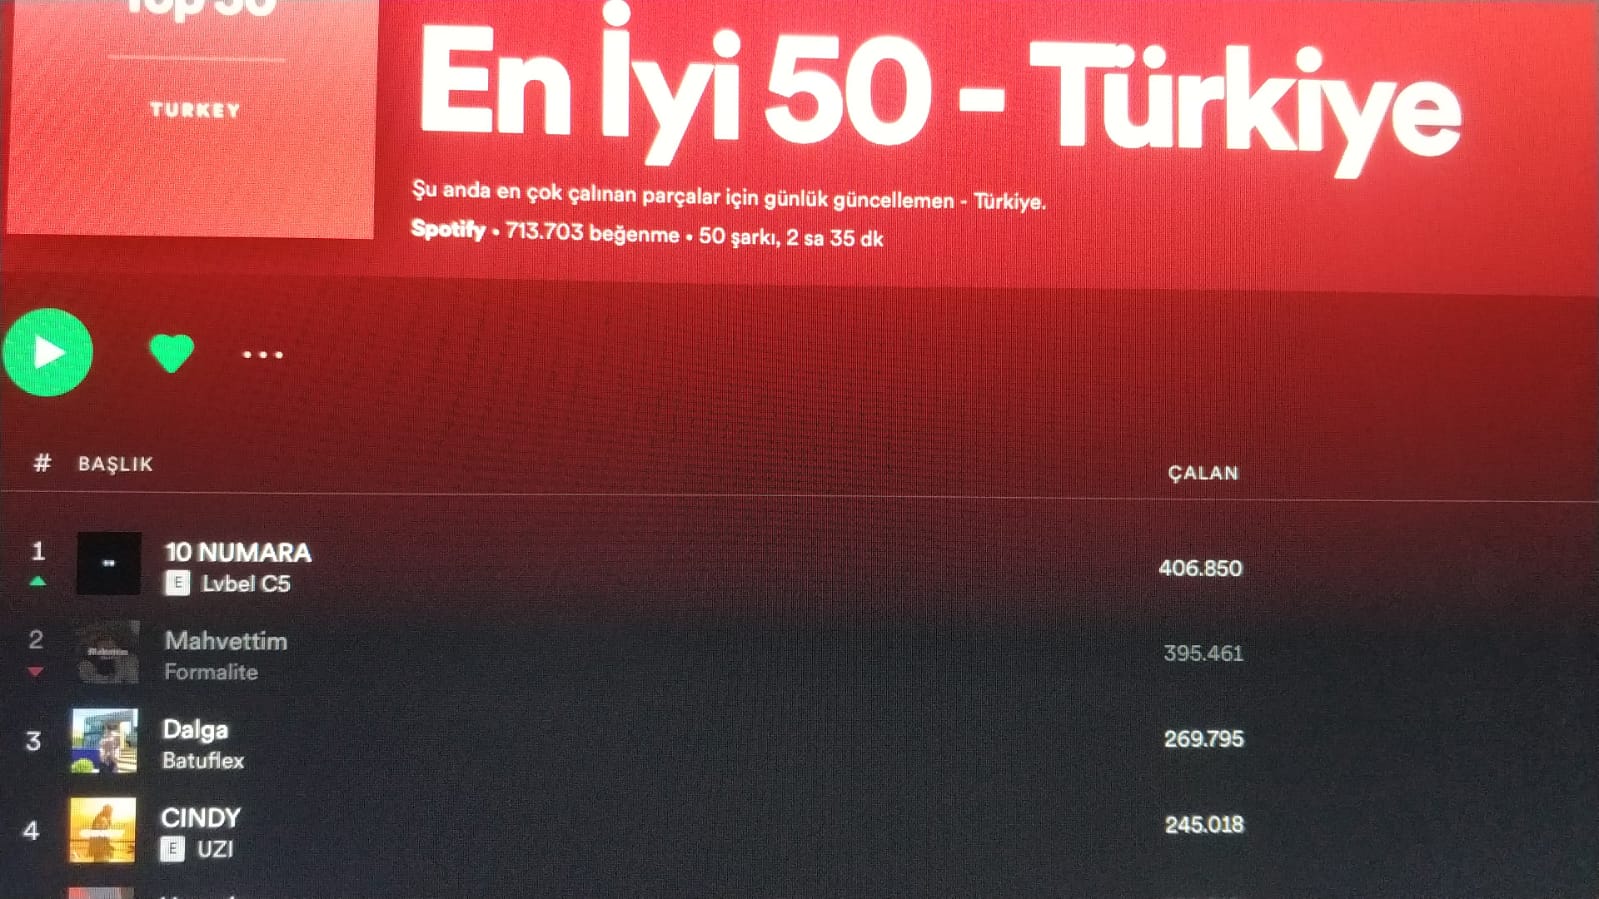 Spotify turkey. Цена подписки Spotify в Турции.